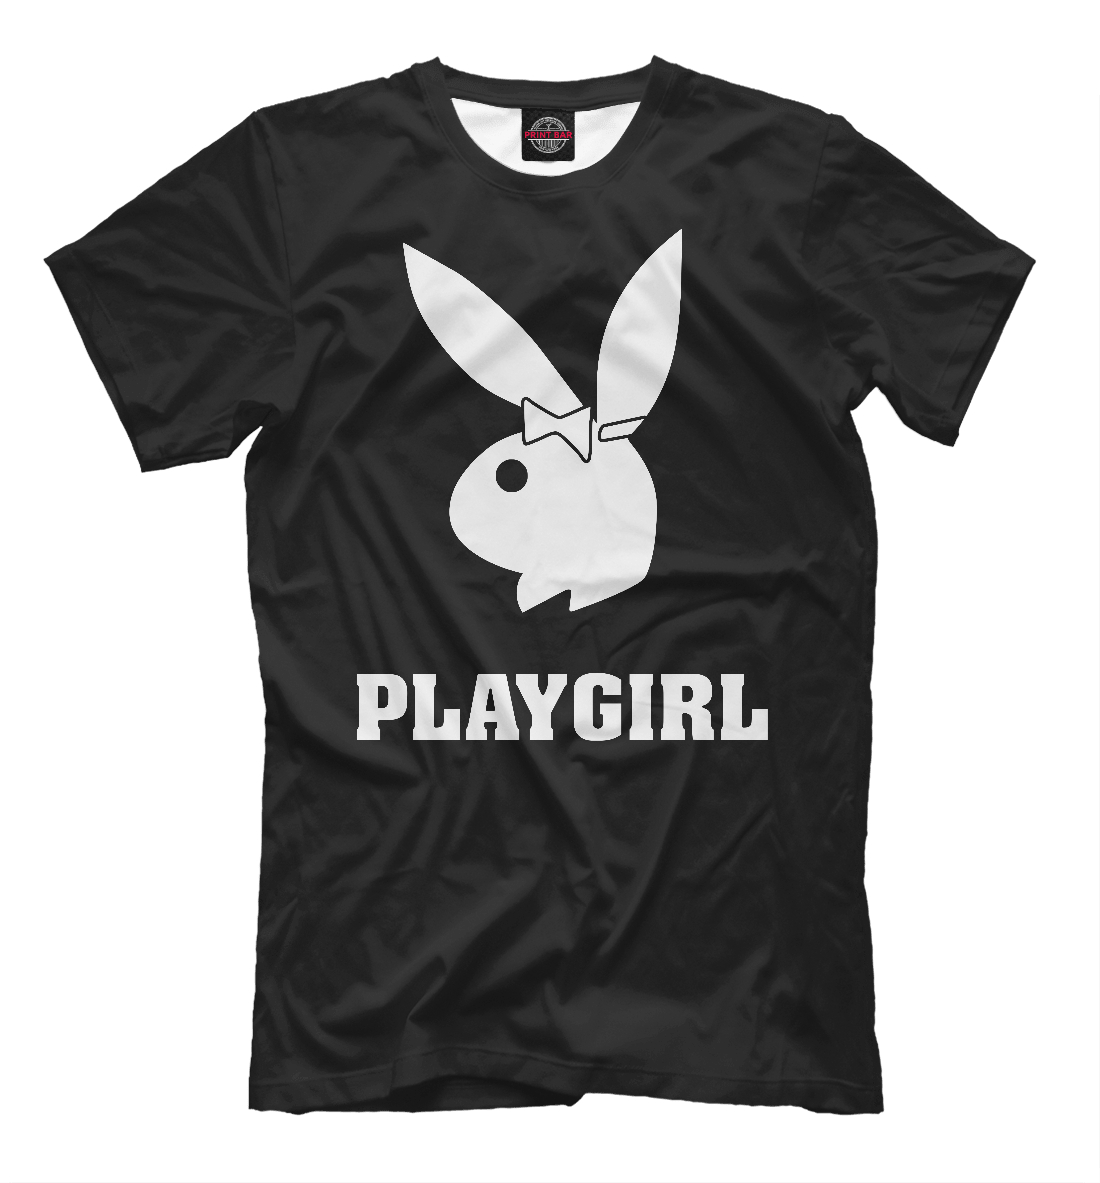 Playgril.Com